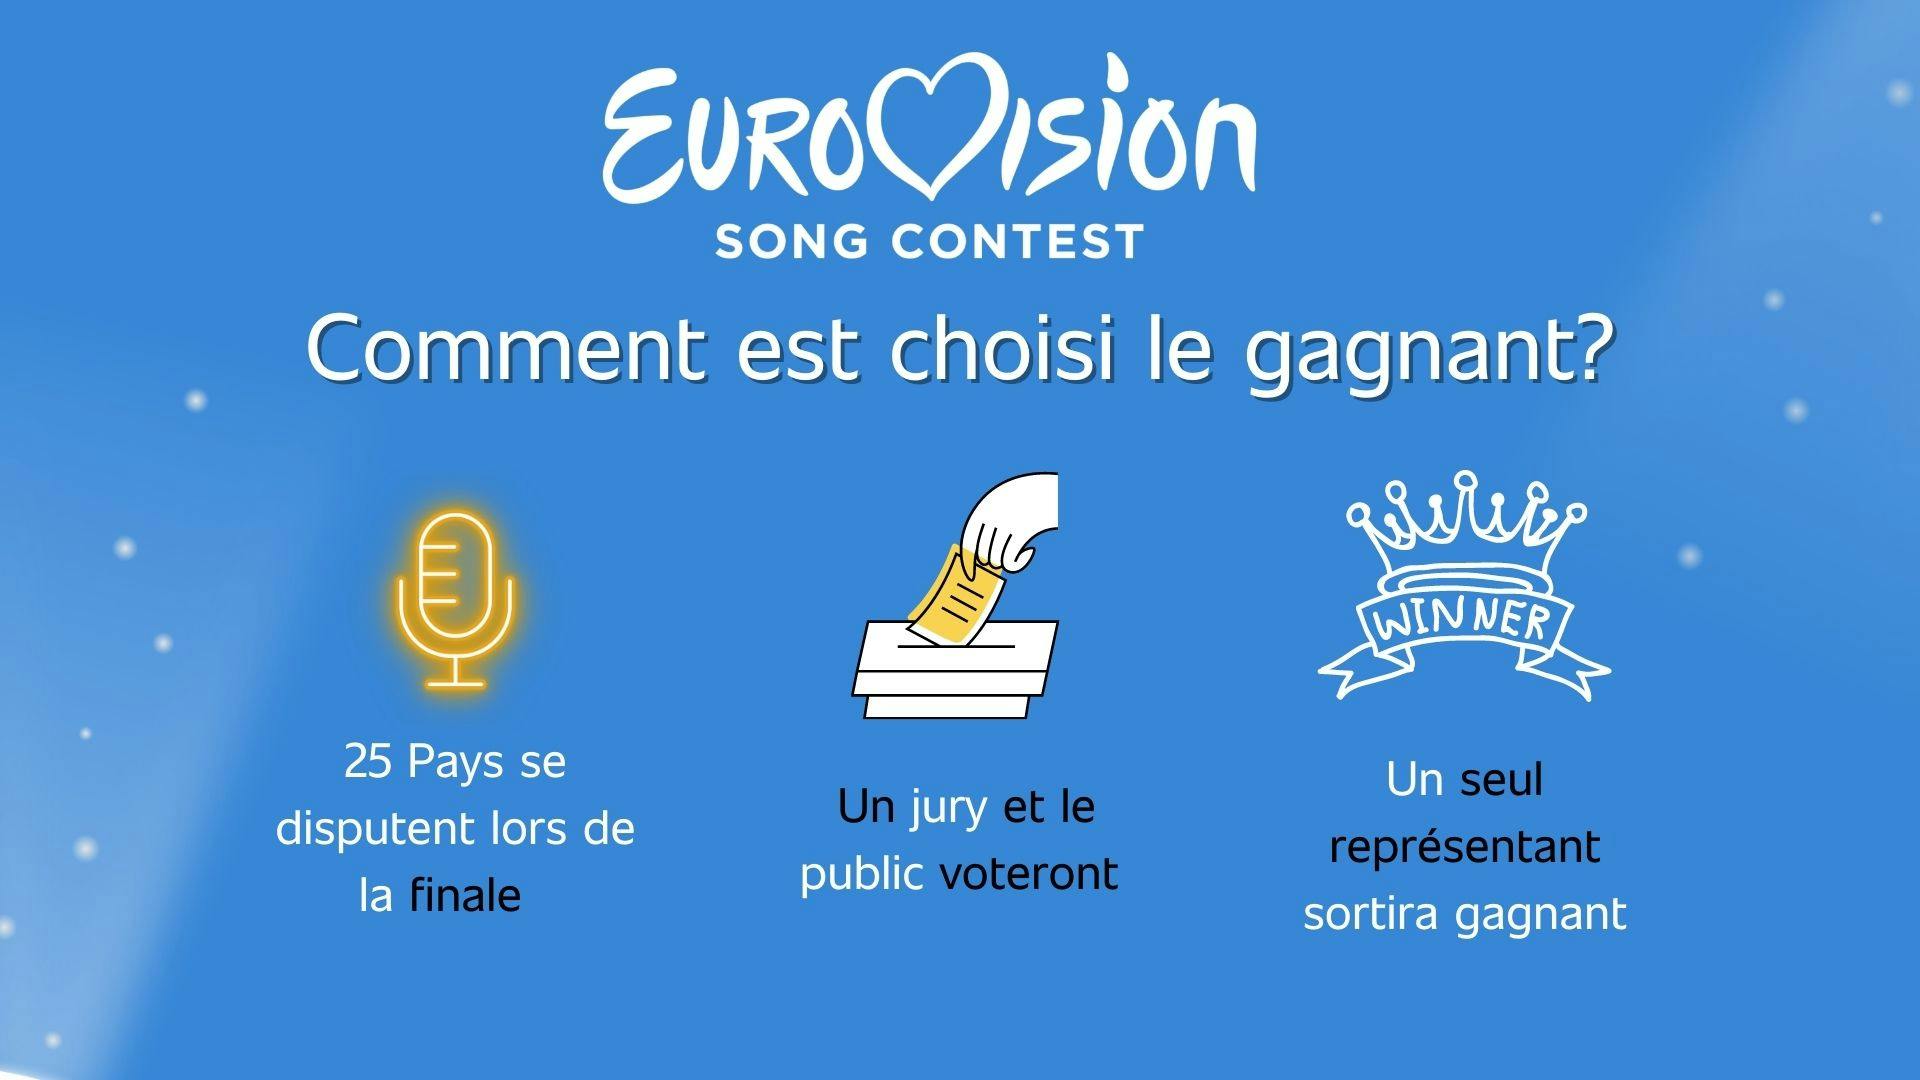 Illustration qui montre comment le gagnant de l’Eurovision est choisi suite à un vote